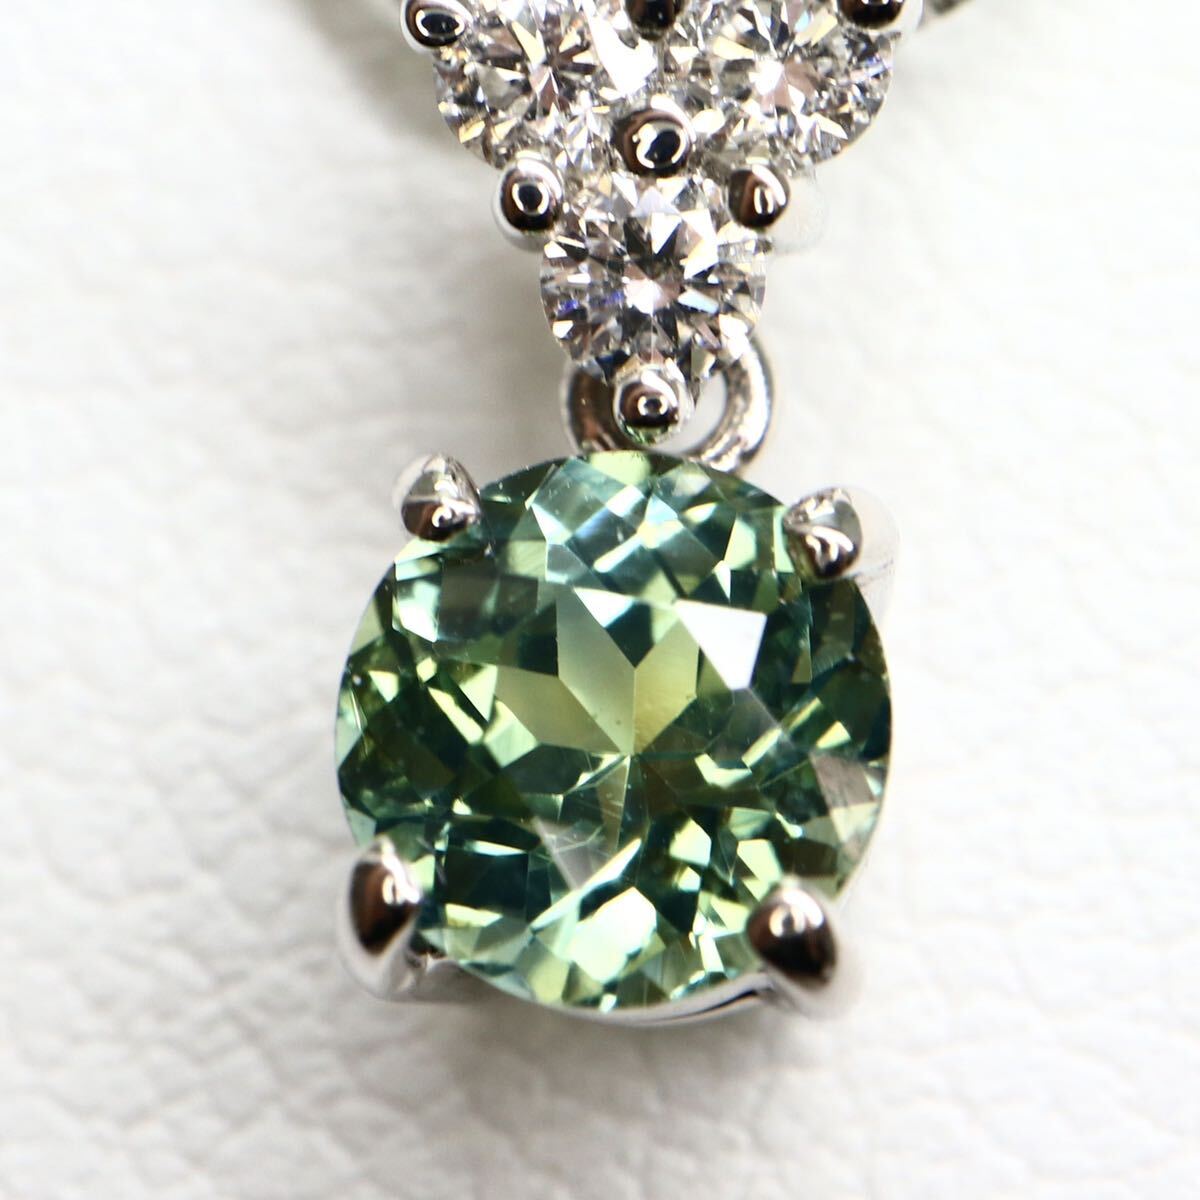 ソーティング付き!!《Pt900/Pt850 天然ダイヤモンド/天然サファイアネックレス》A 約3.1g diamond sapphire jewelry necklace EA5/EAの画像5